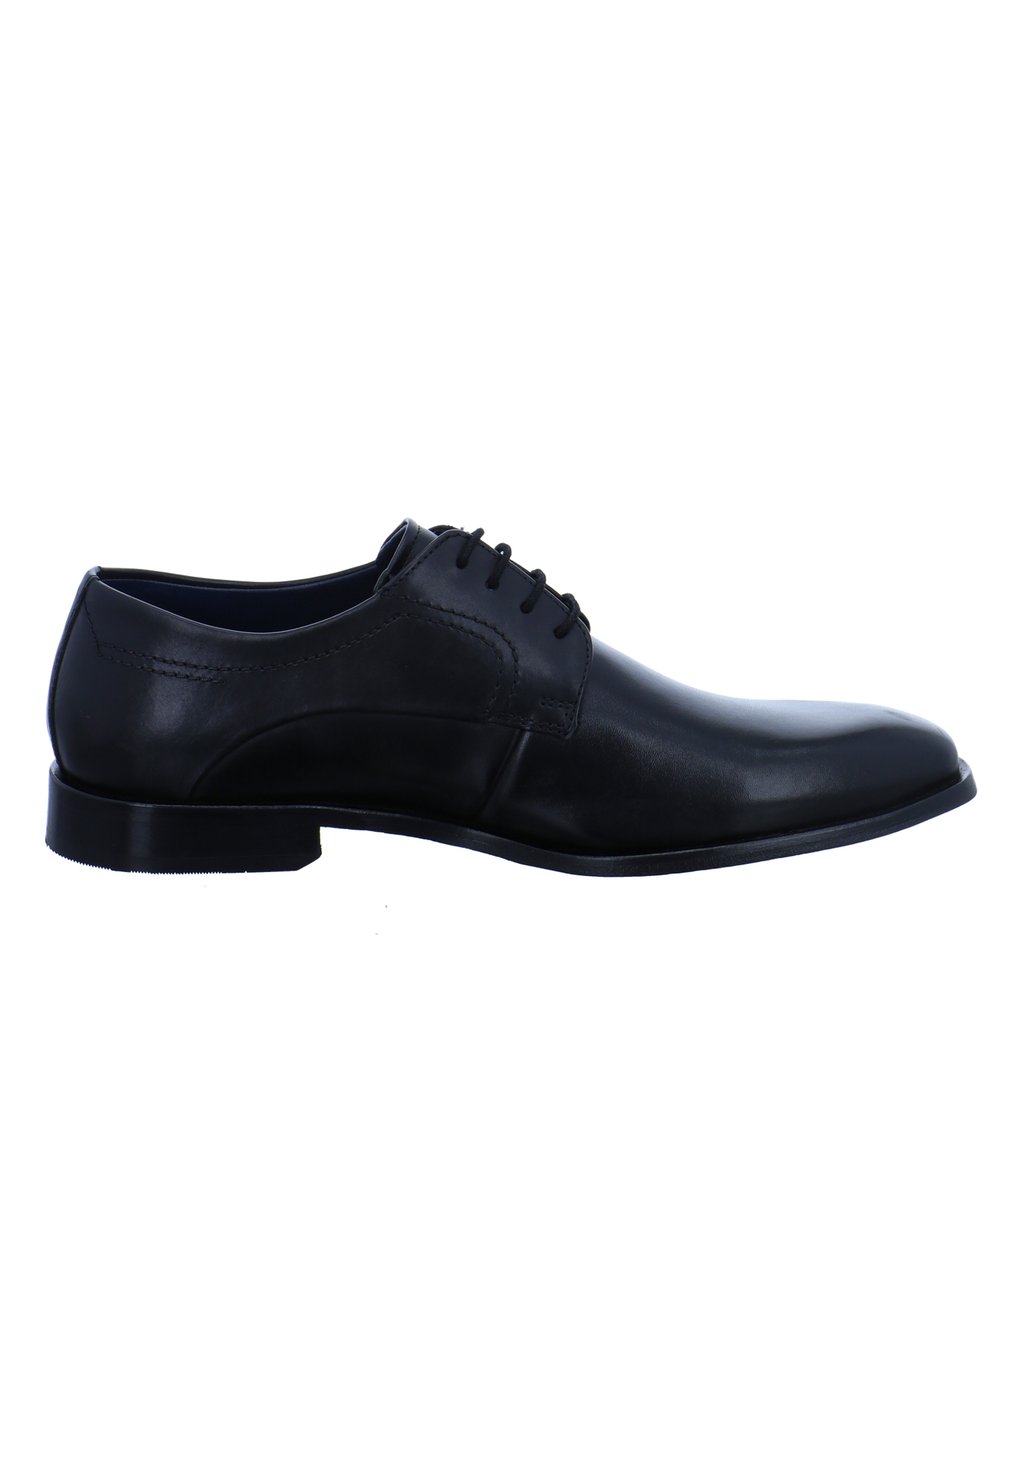 Деловые туфли на шнуровке bugatti, цвет schwarz фото